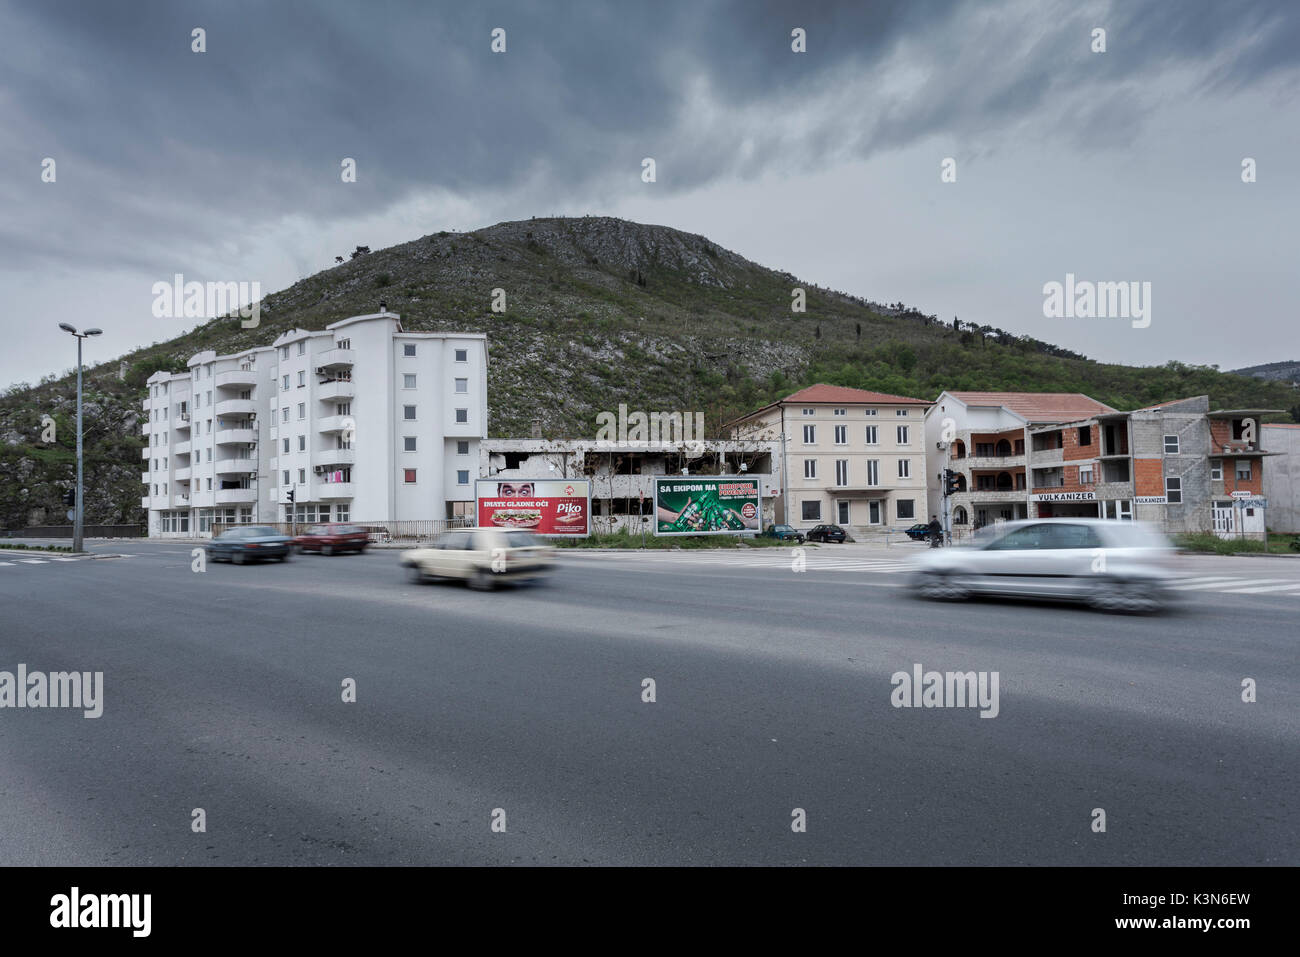 Osteuropa, Mostar, Bosnien und Herzegowina. Neue Gebäude und Ruinen entlang der Straßen der Stadt Mostar Stockfoto